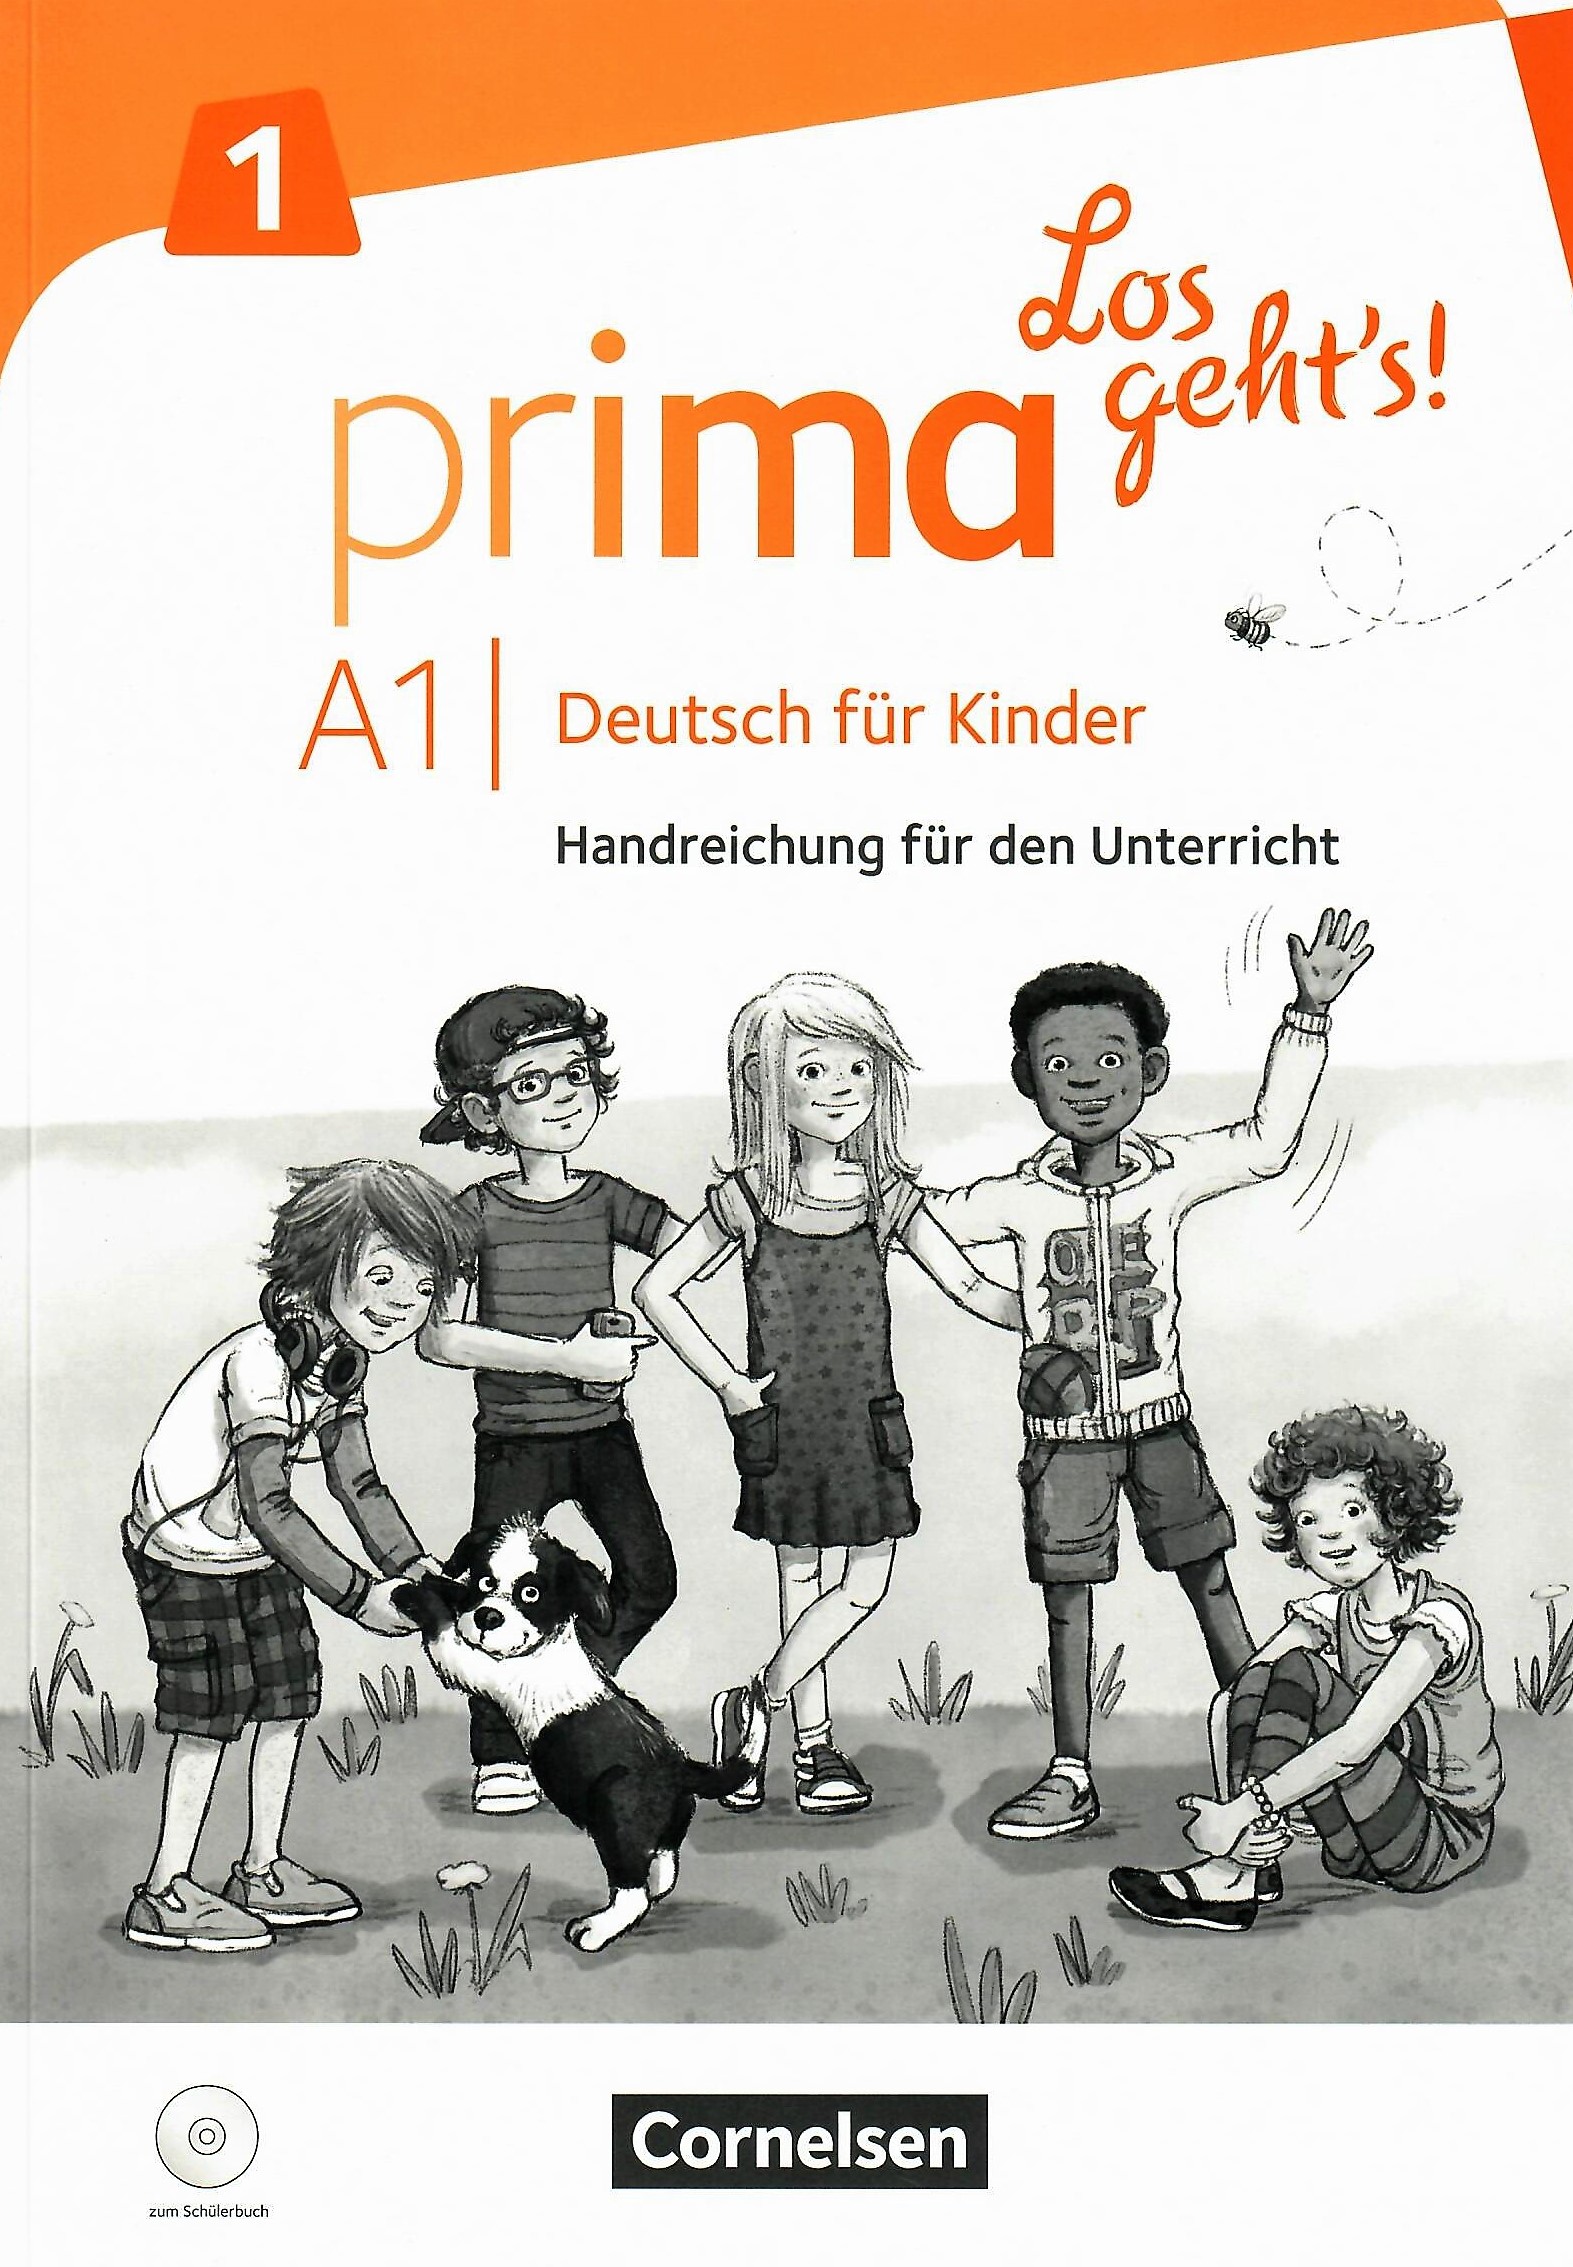 Prima Los geht's! 1 Handreichungen fur den Unterricht / Книга для учителя